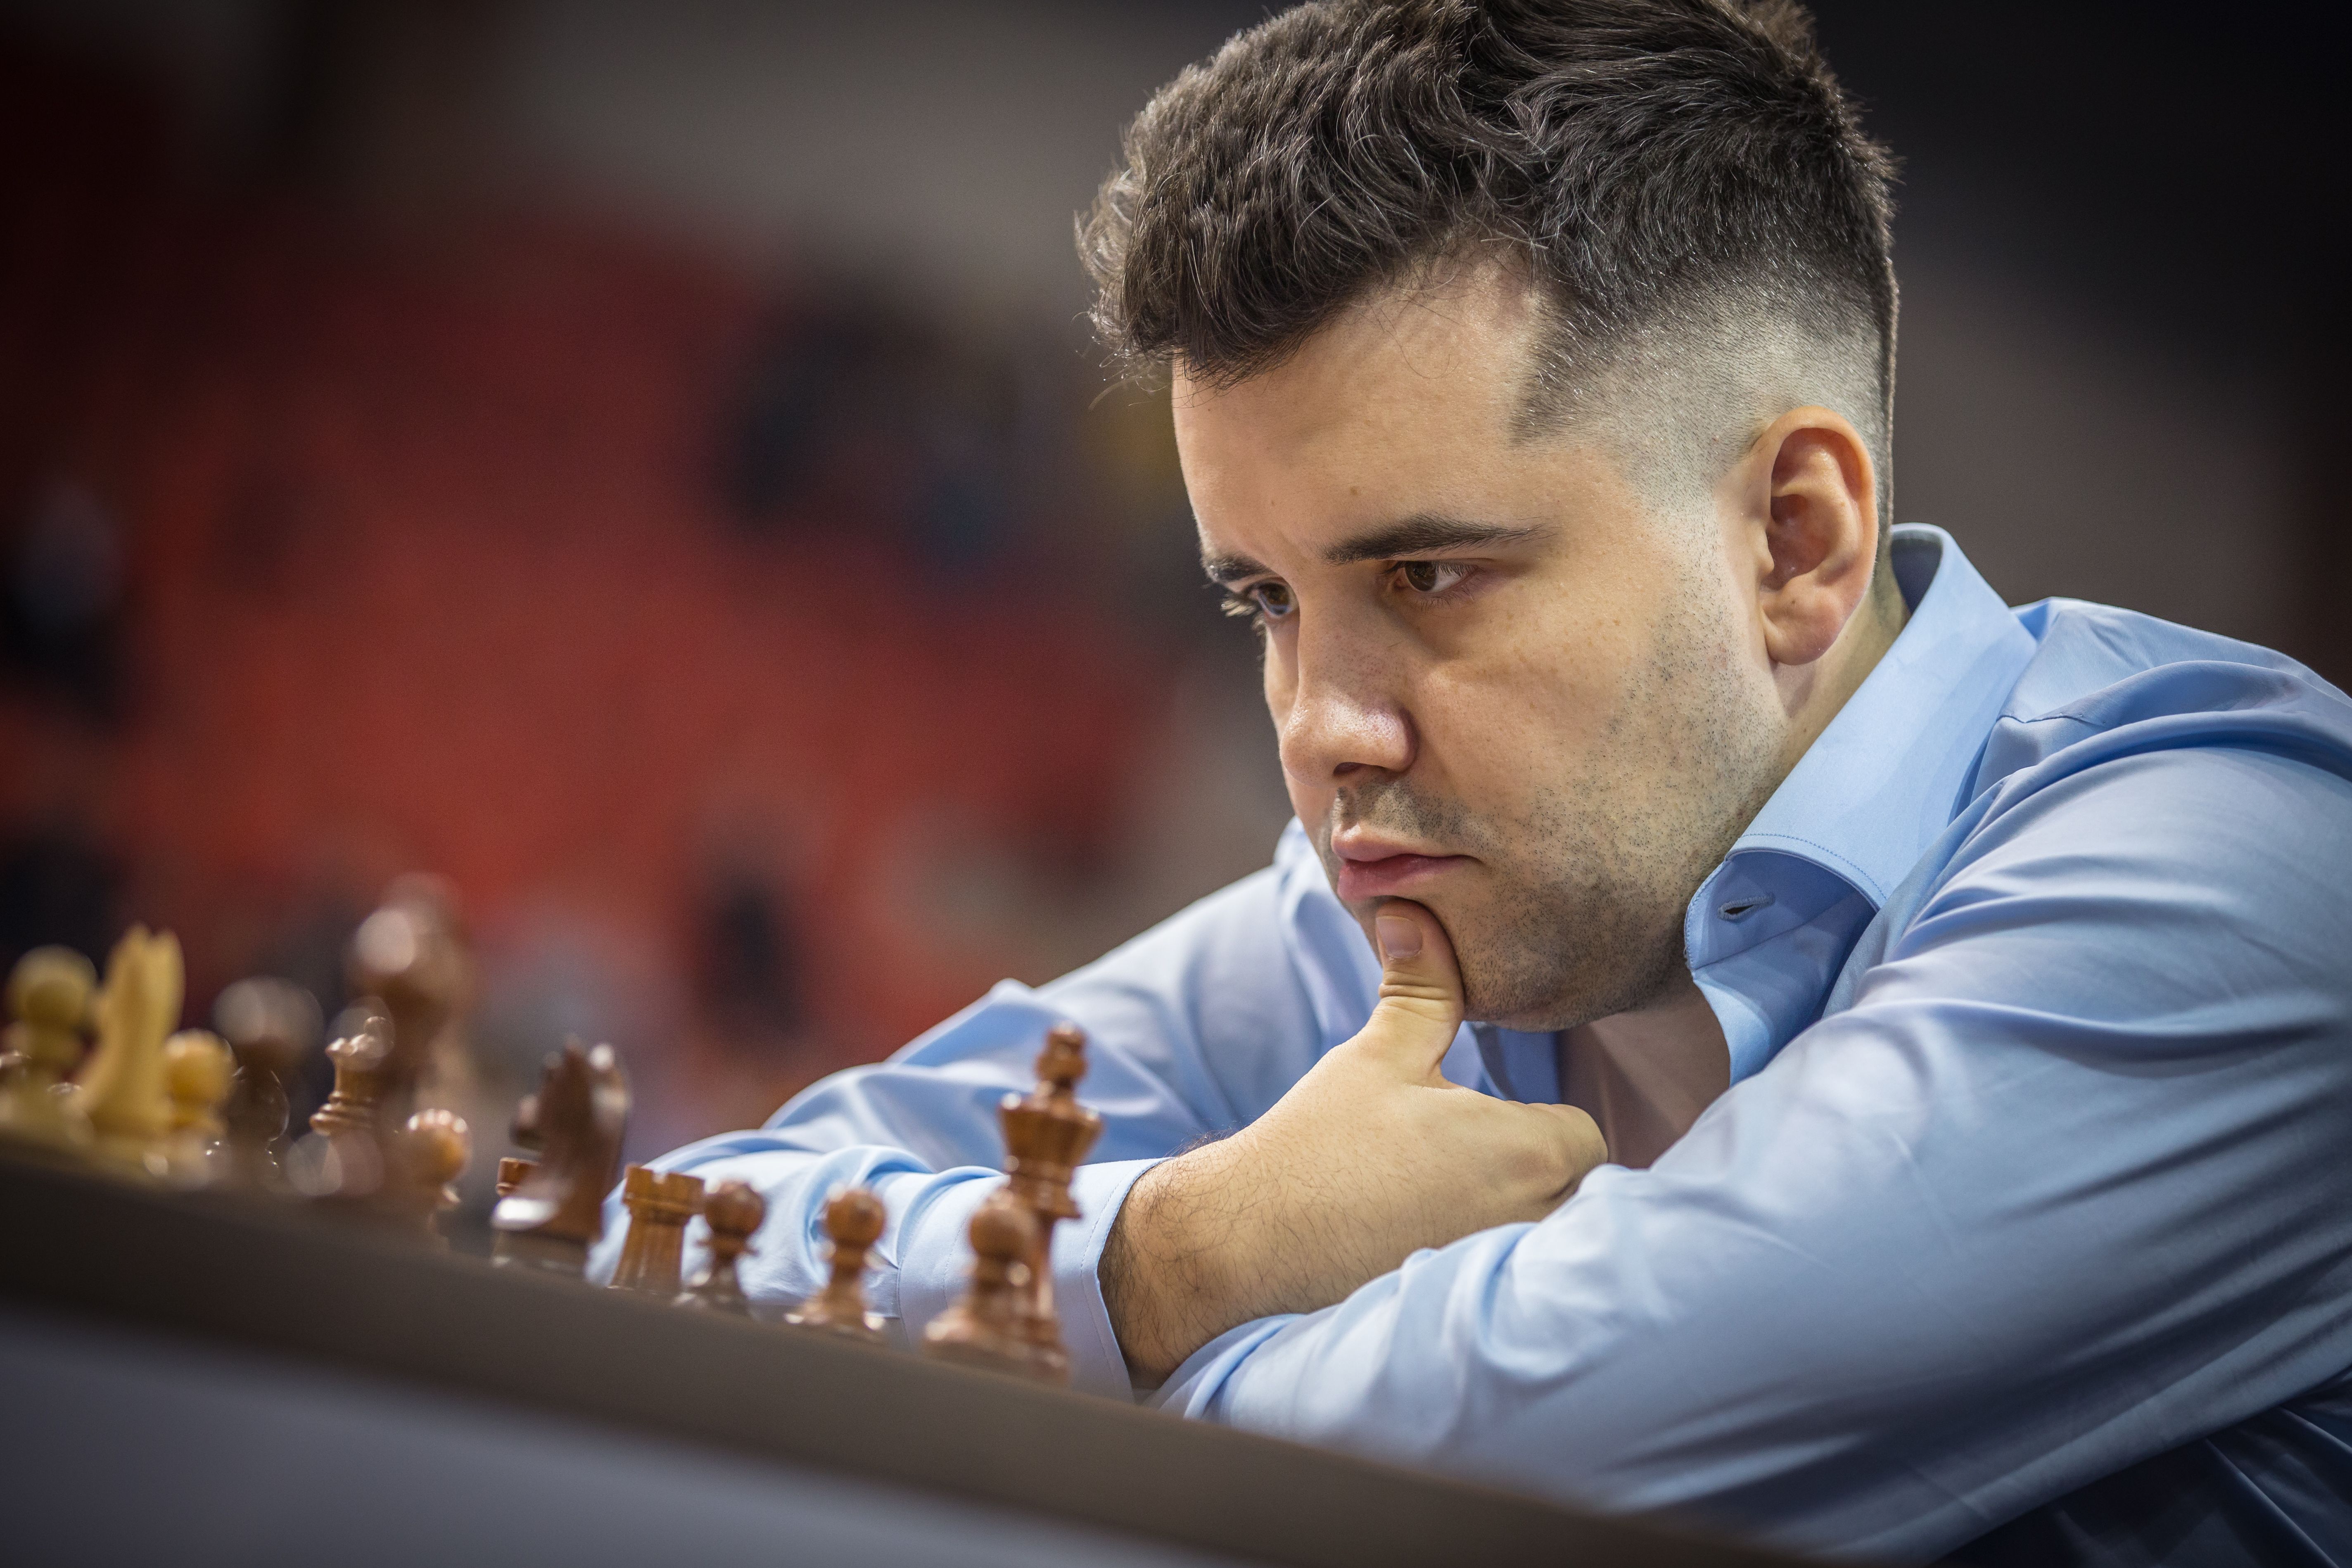 Campeonato Mundial de Rápido - dia 03: Abdusattorov e Kosteniuk são os  novos campeões mundiais de xadrez rápido 